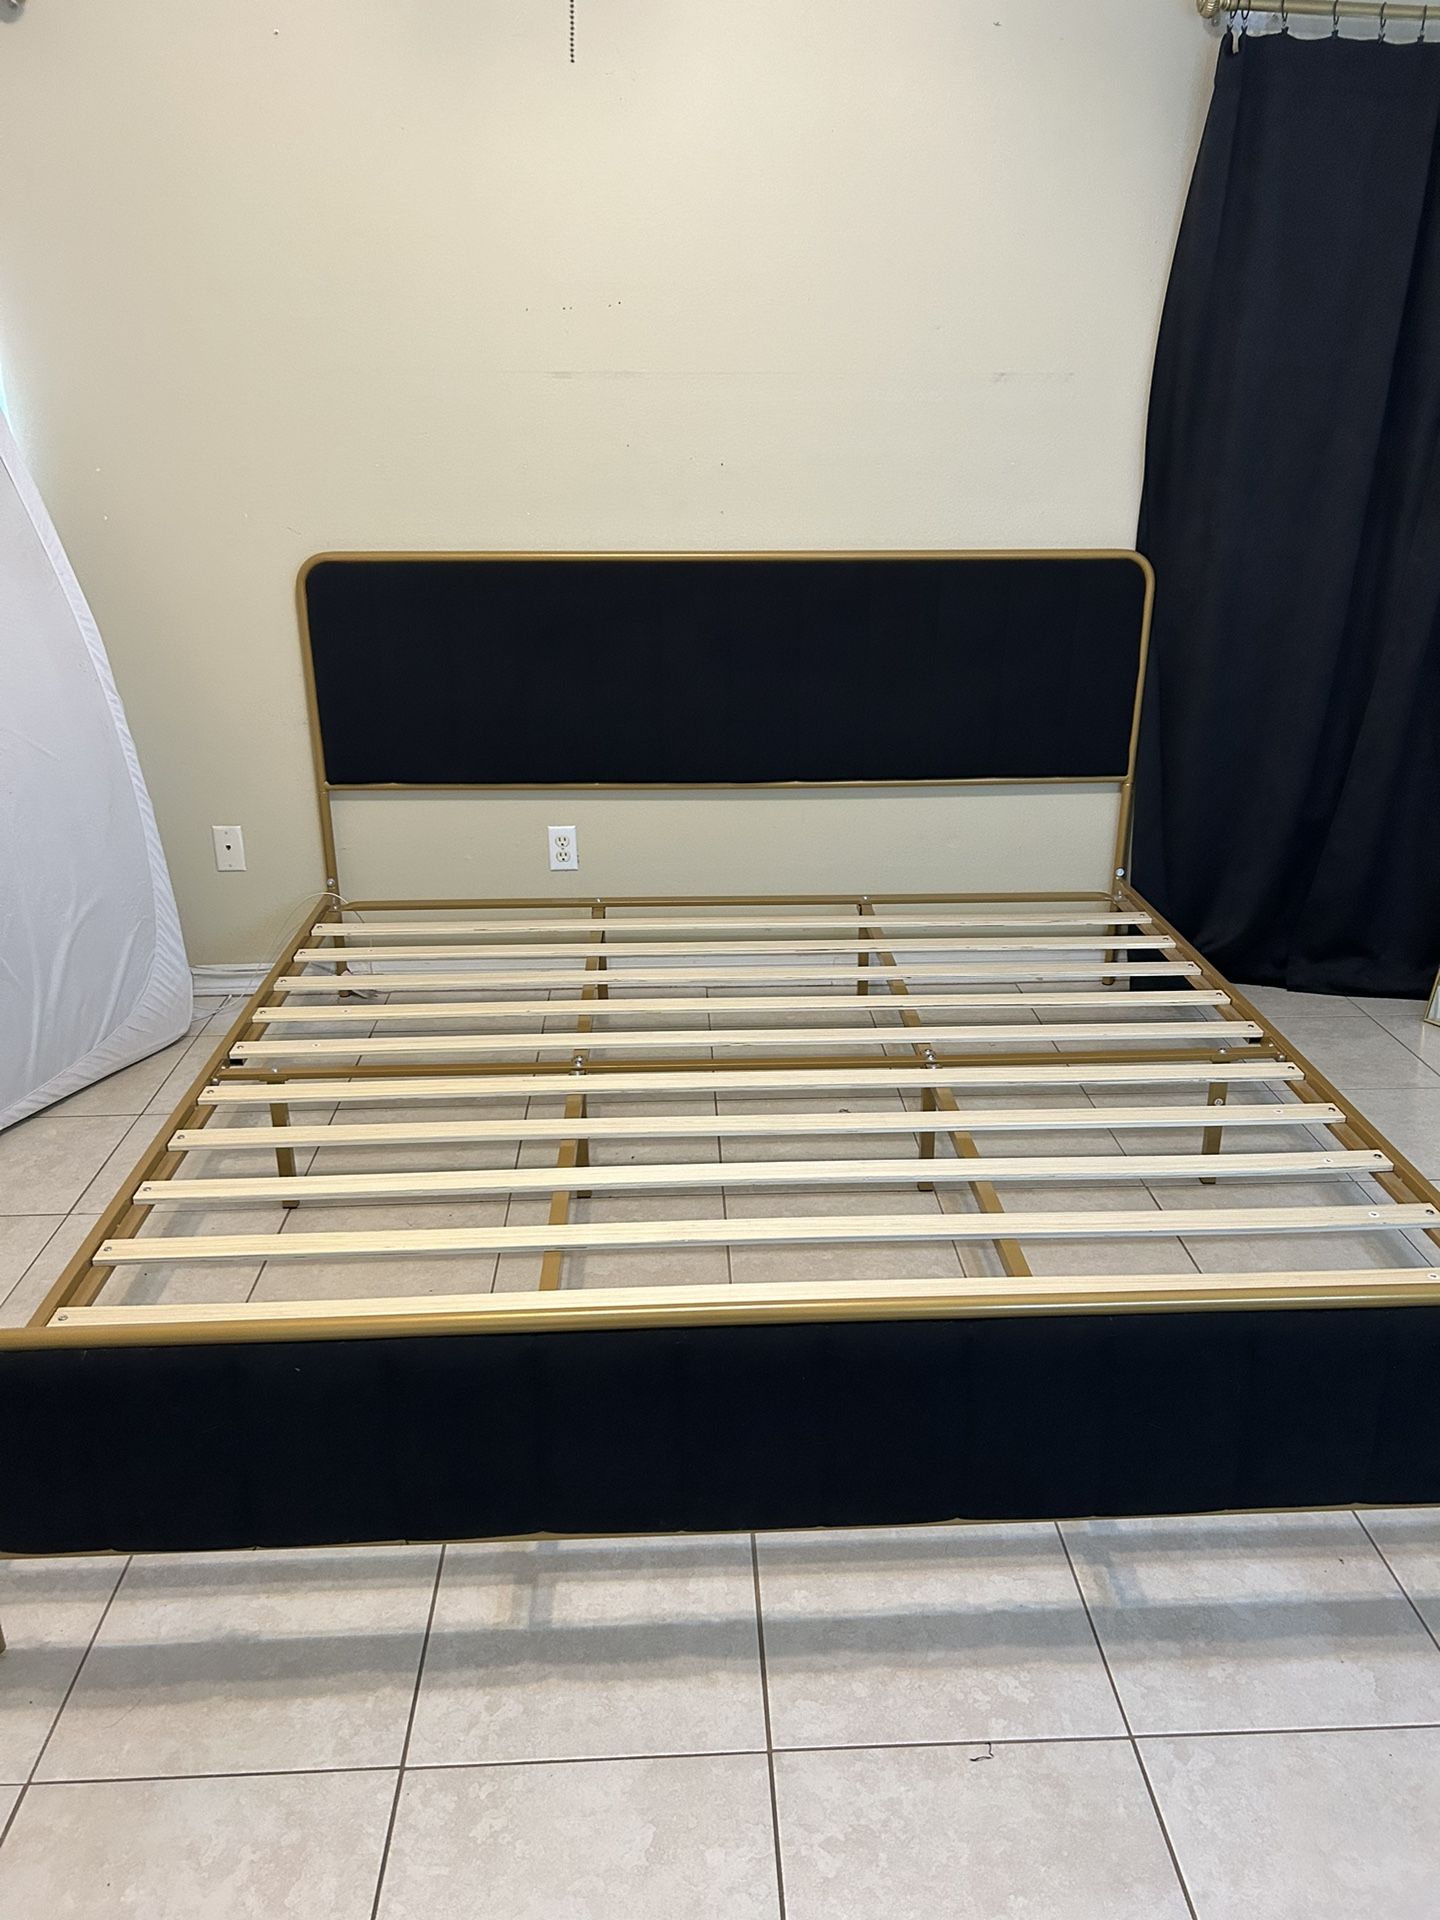 King Size Bed Frame